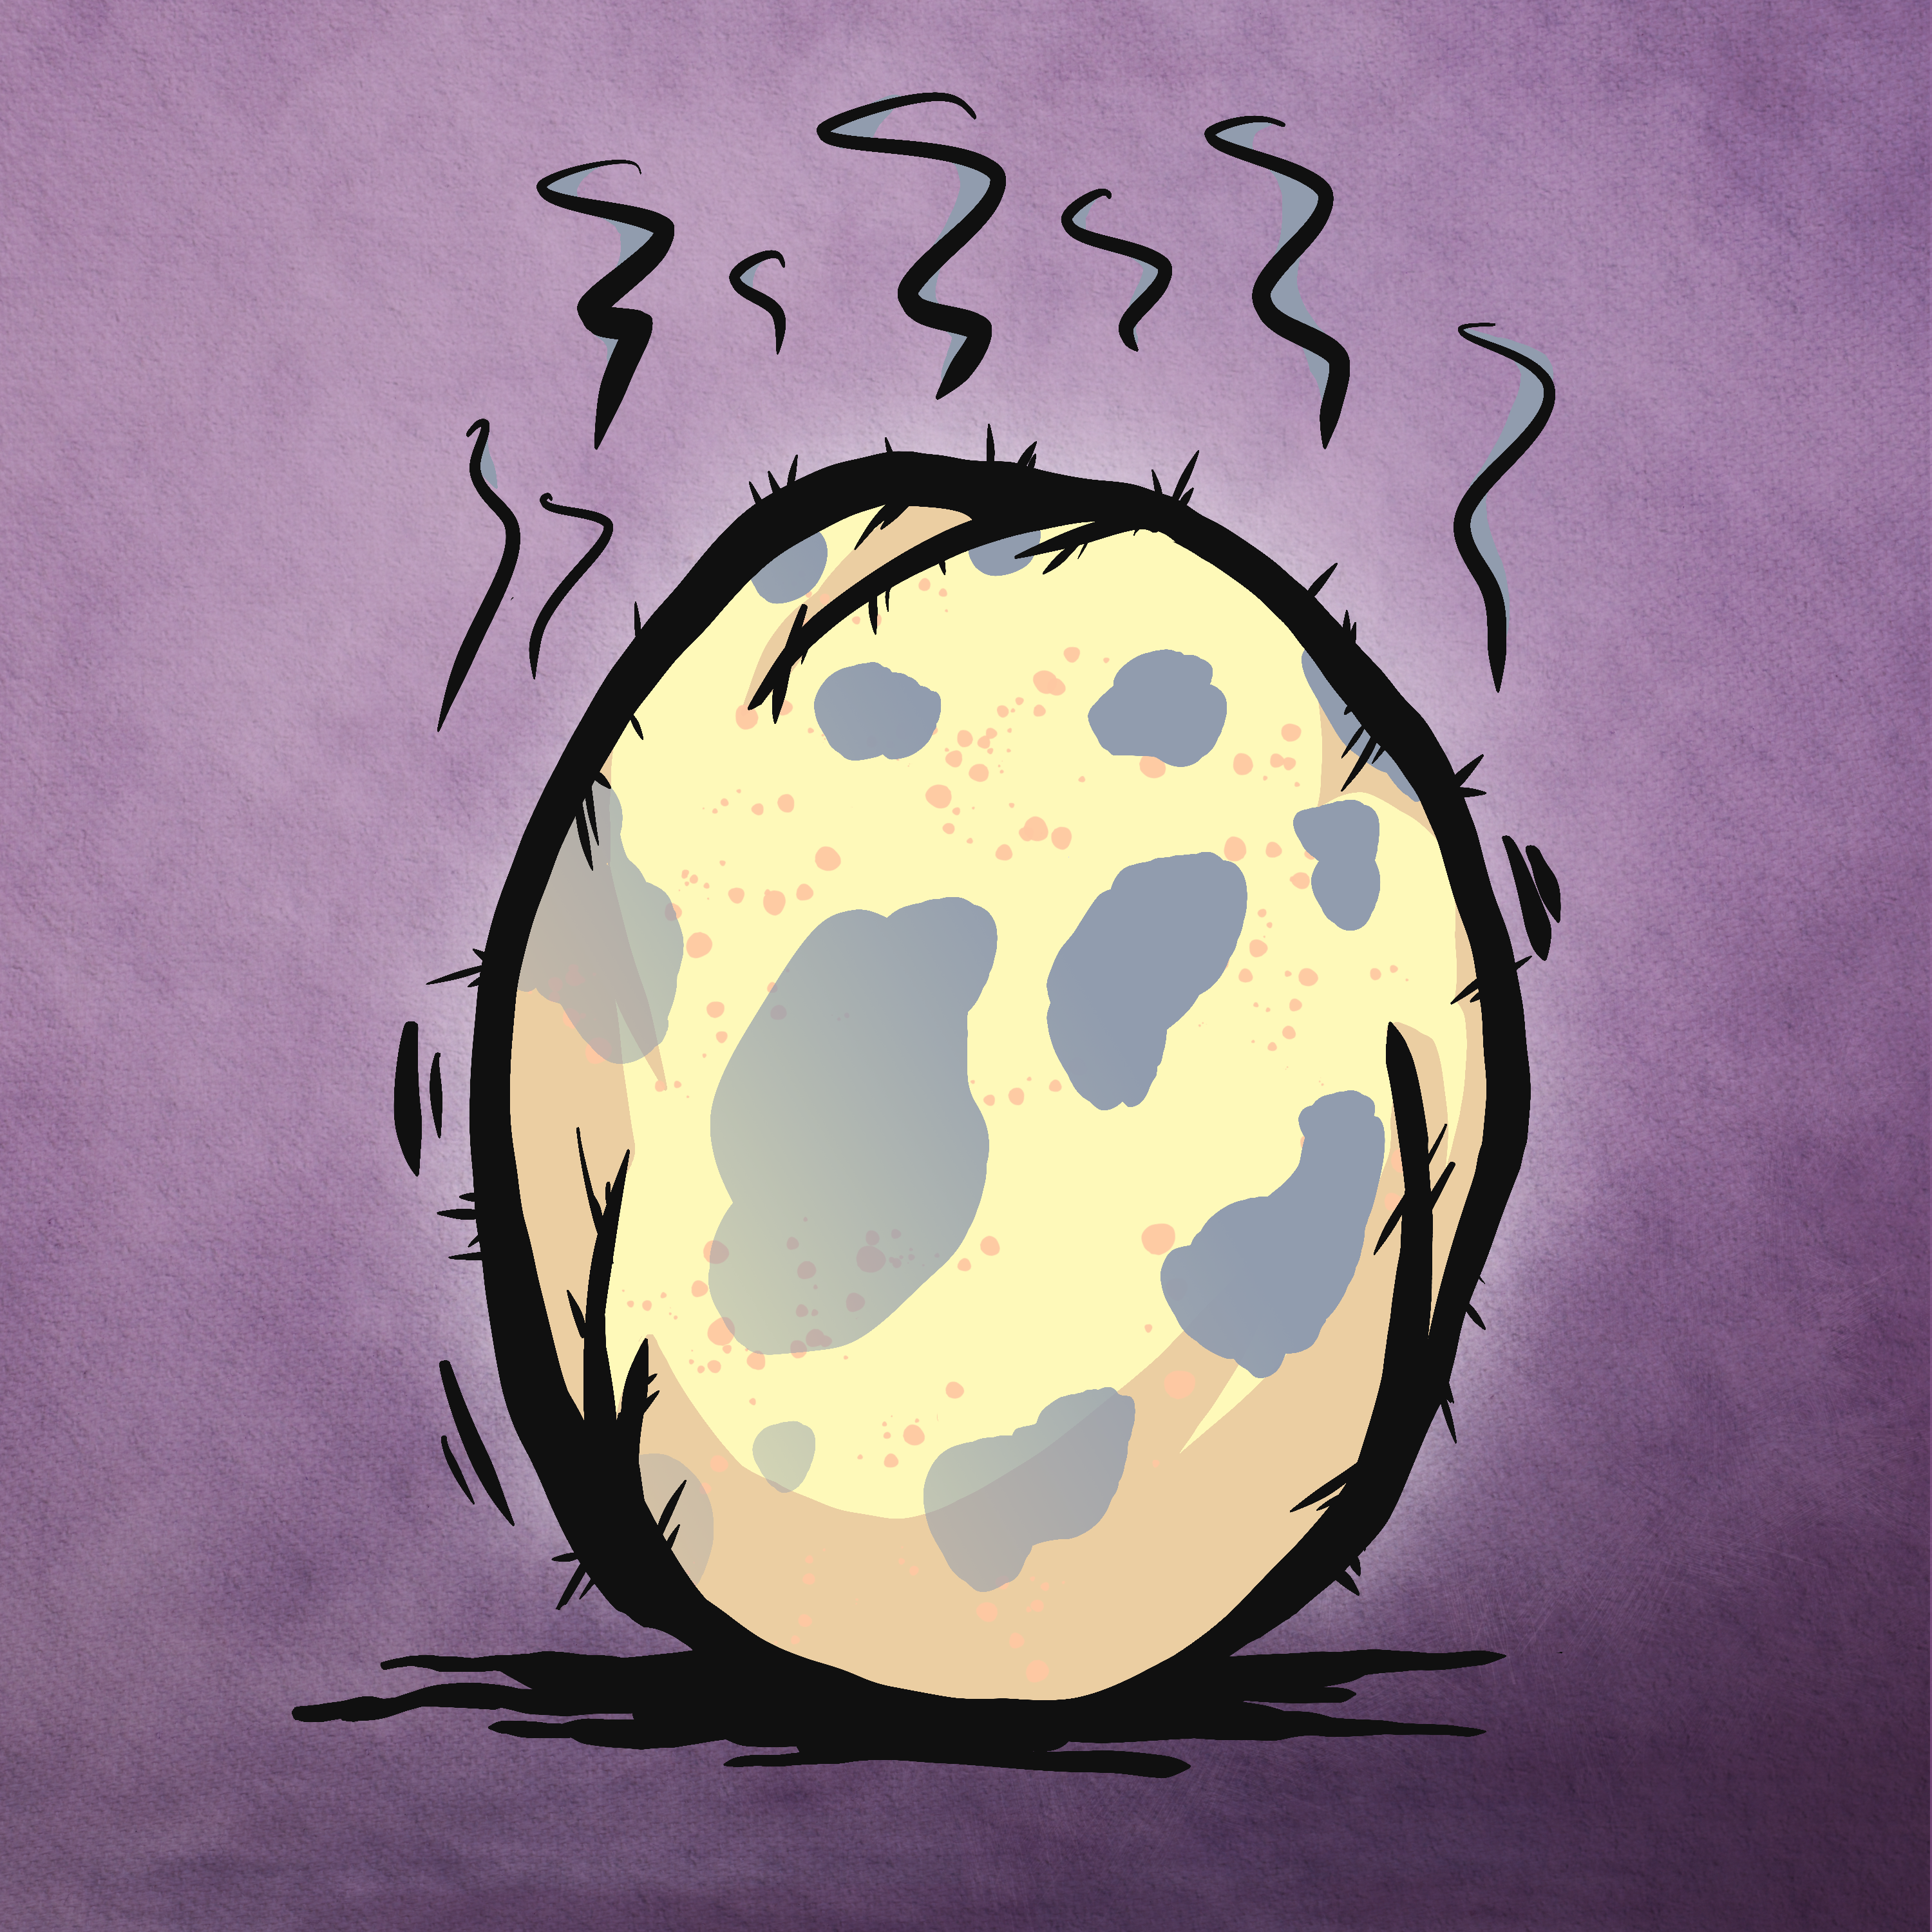 Egg #3559